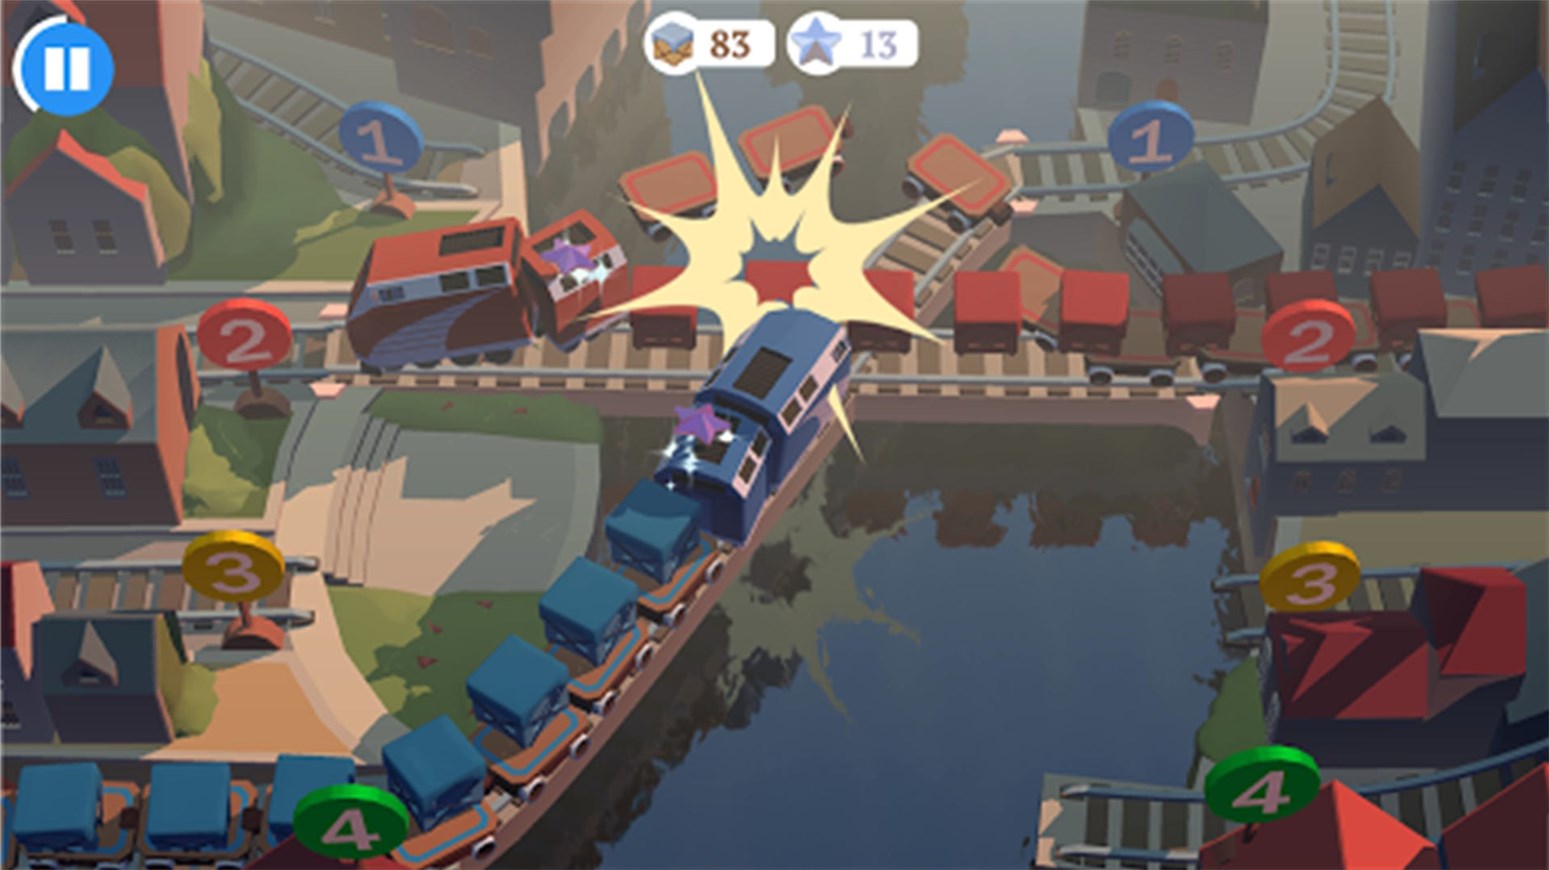 火车运输模拟世界游戏截图